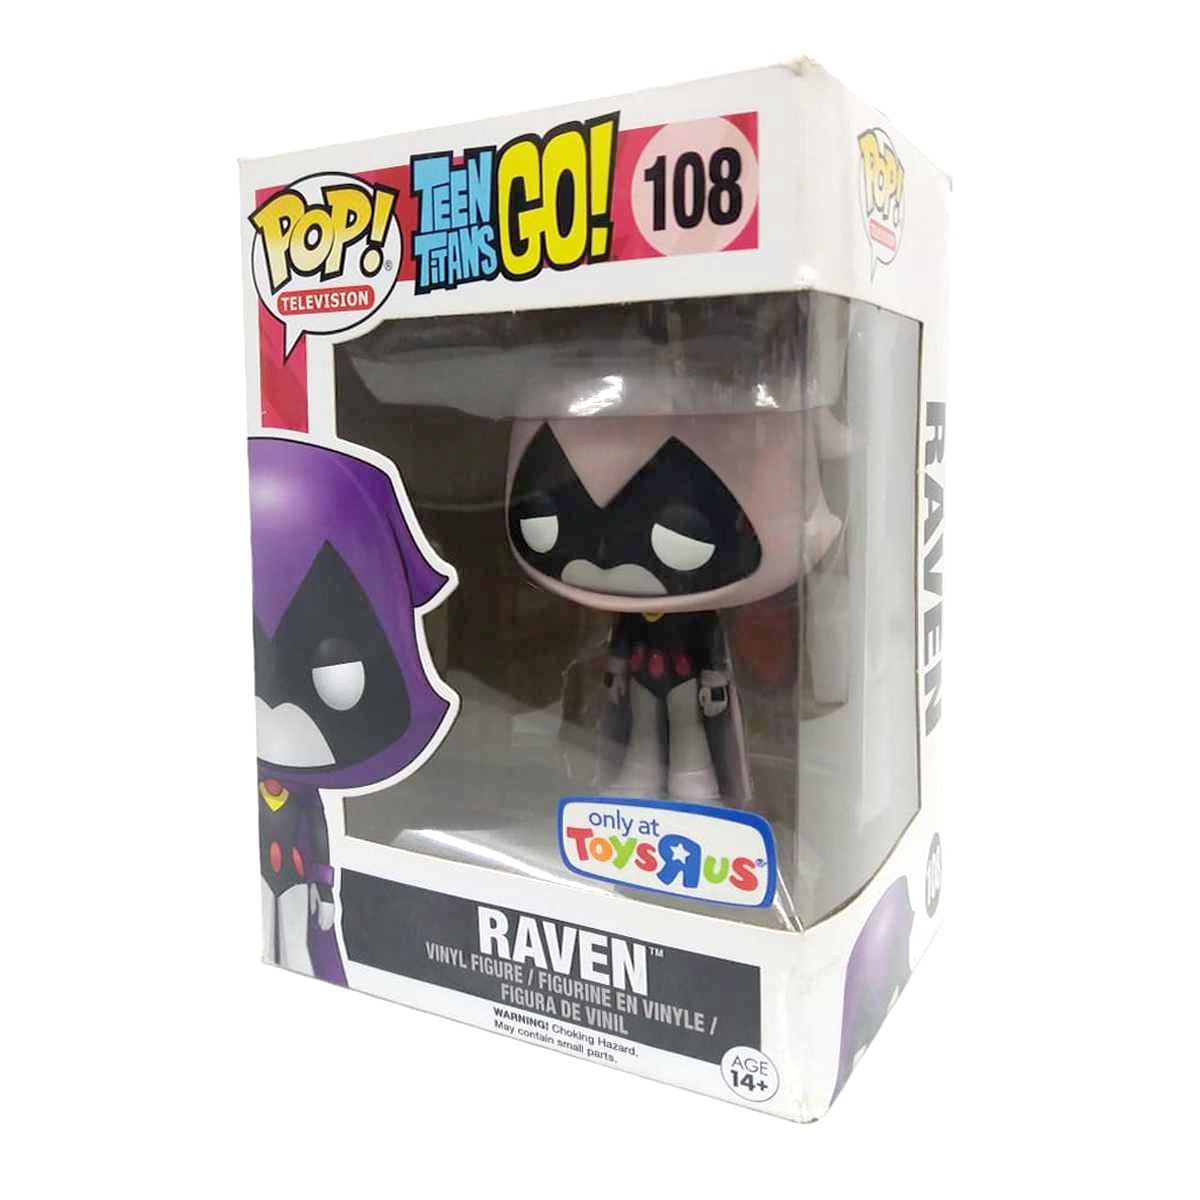 Funko Pop! Television Teen Titans Go! Raven vinyl figure número 108 Ravena ToysRus